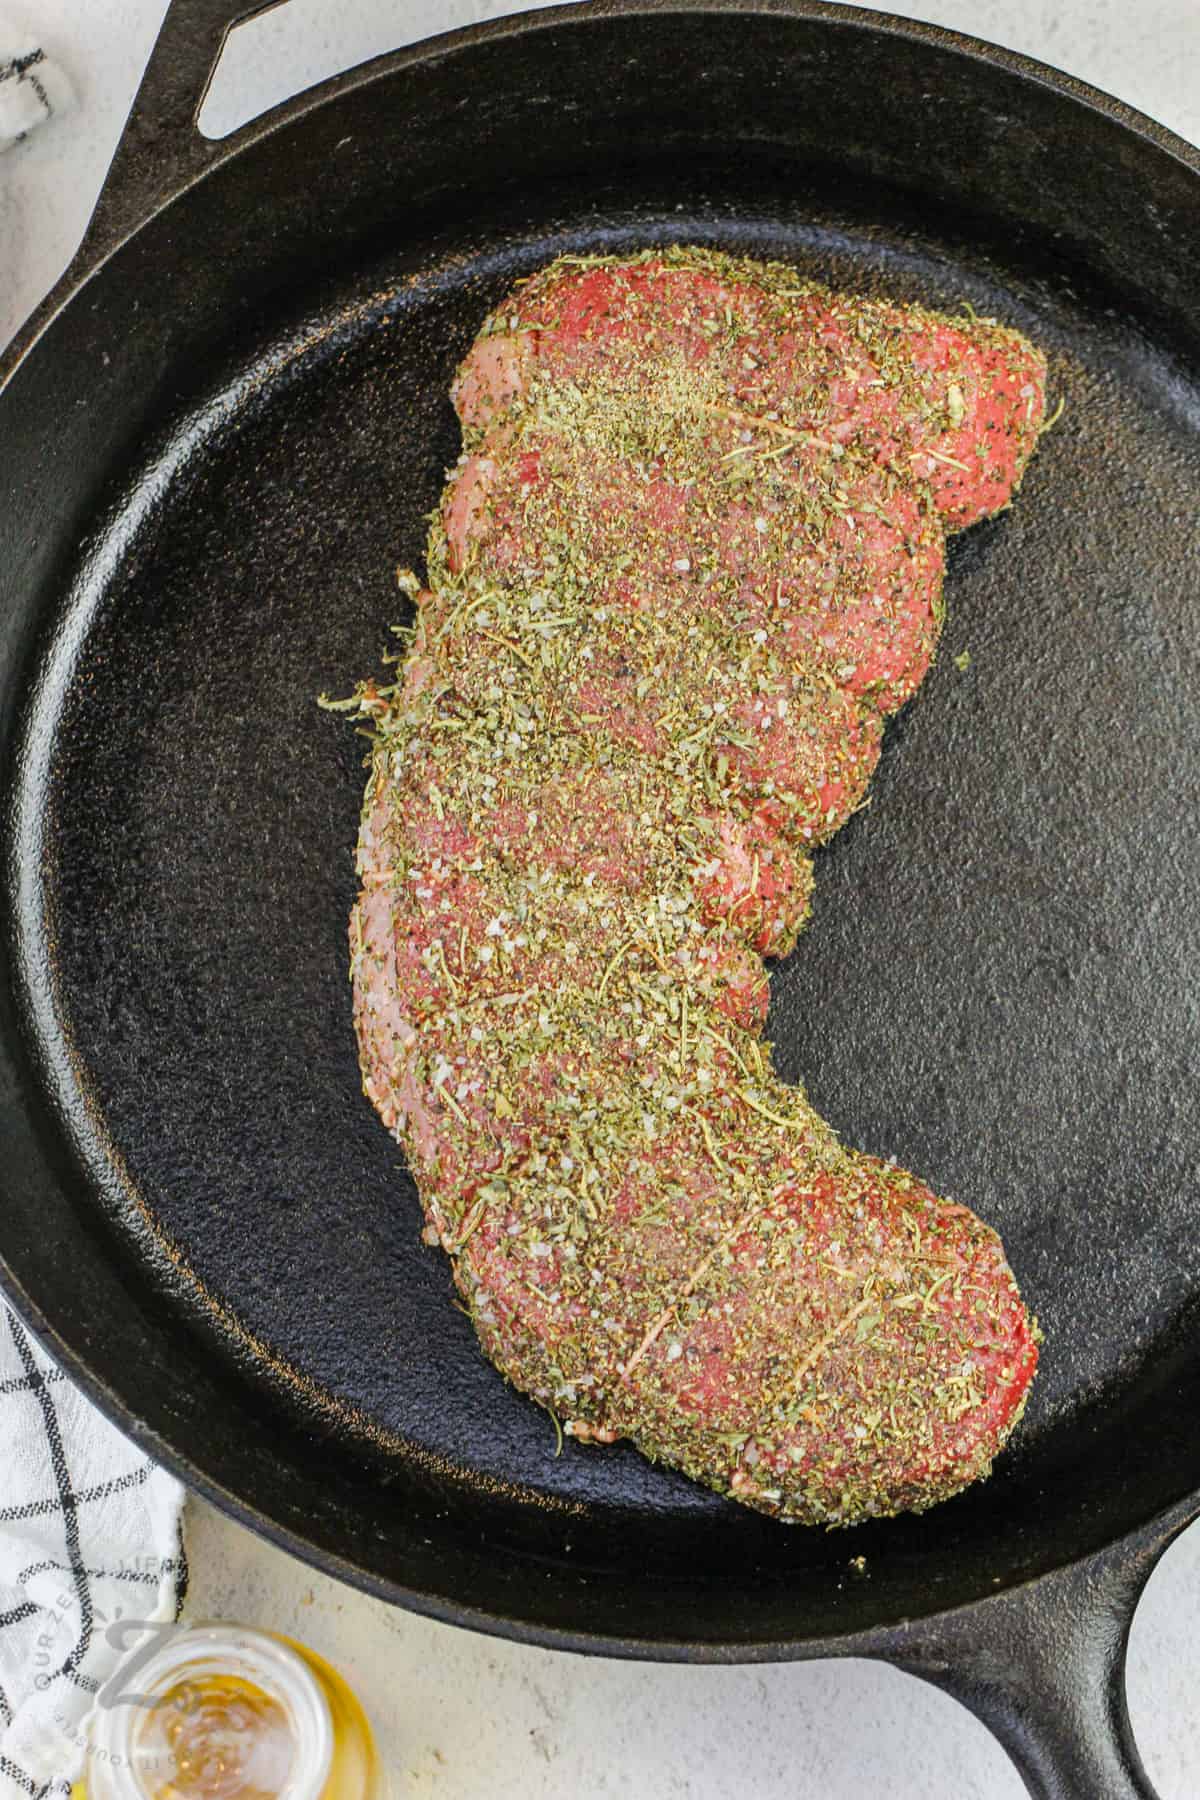 seasoned Beef Round Roast in a pan